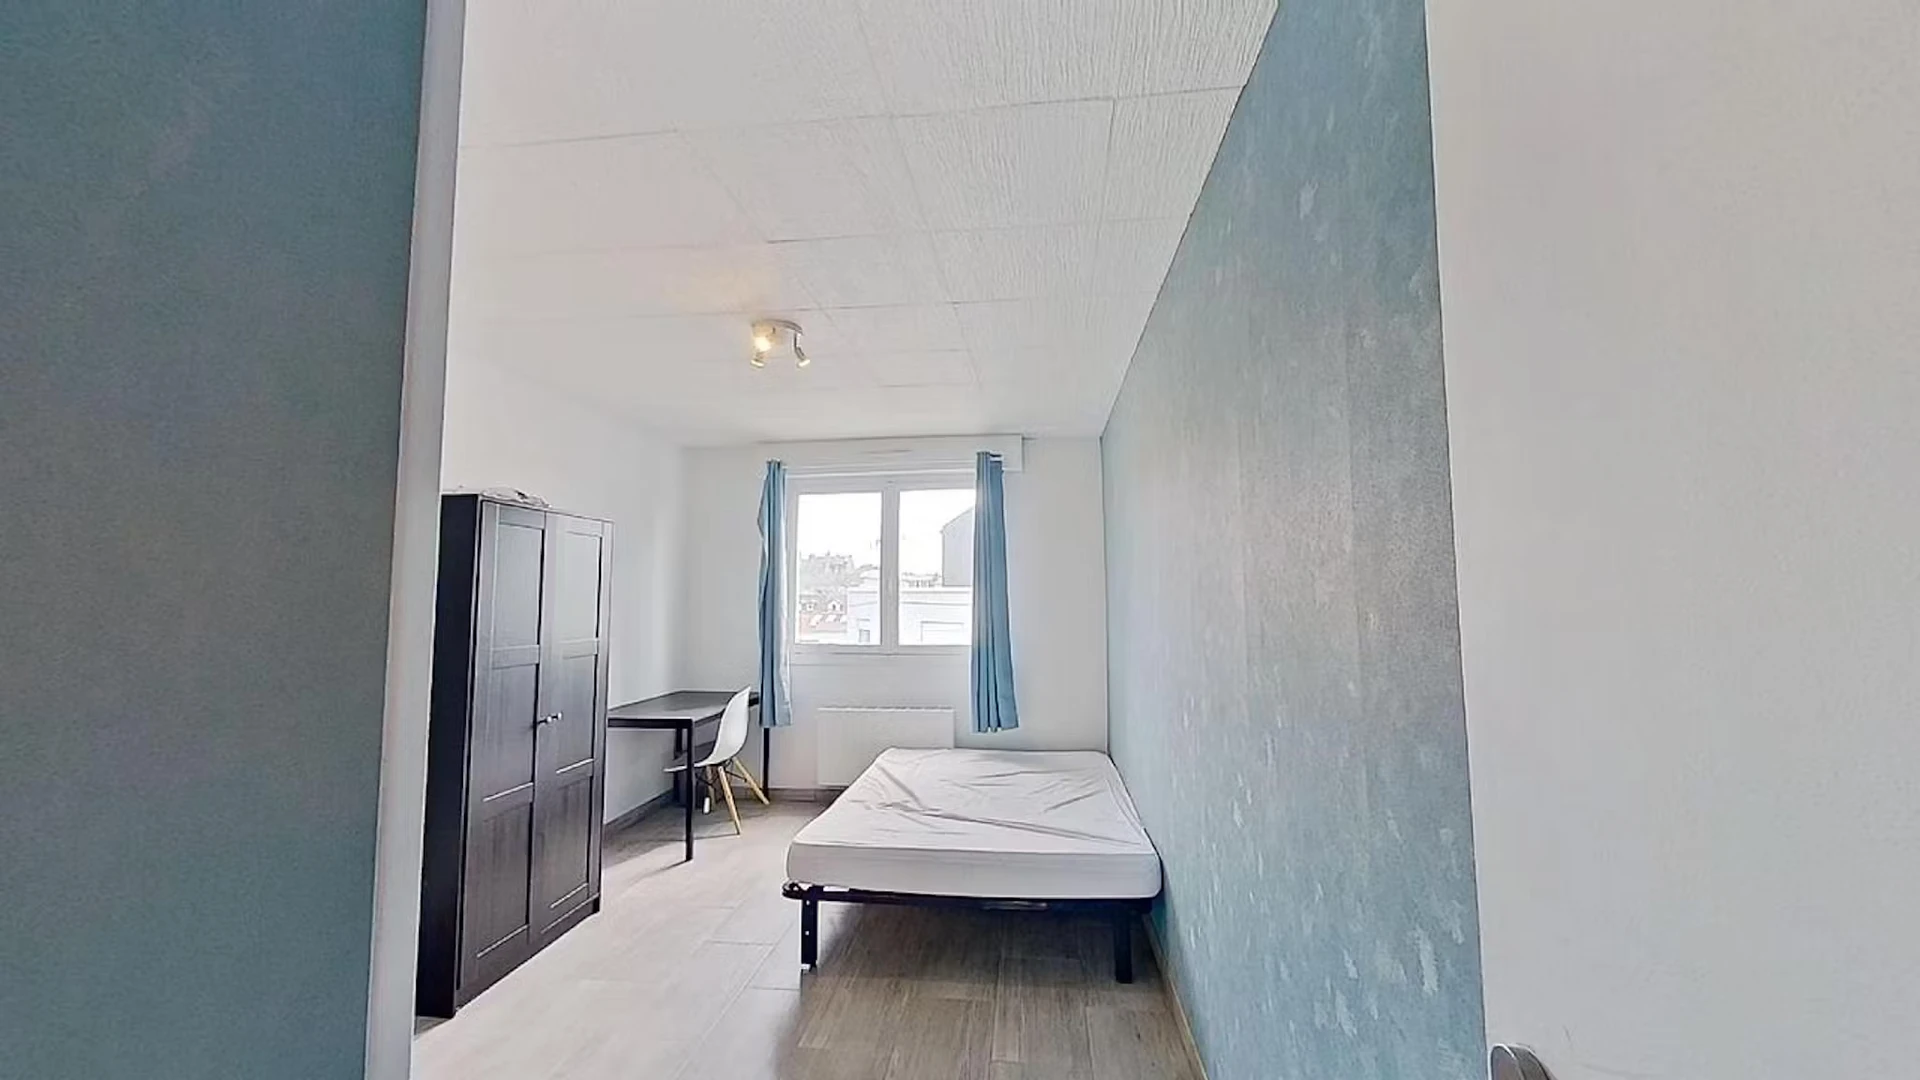 Alquiler de habitación en piso compartido en El Havre